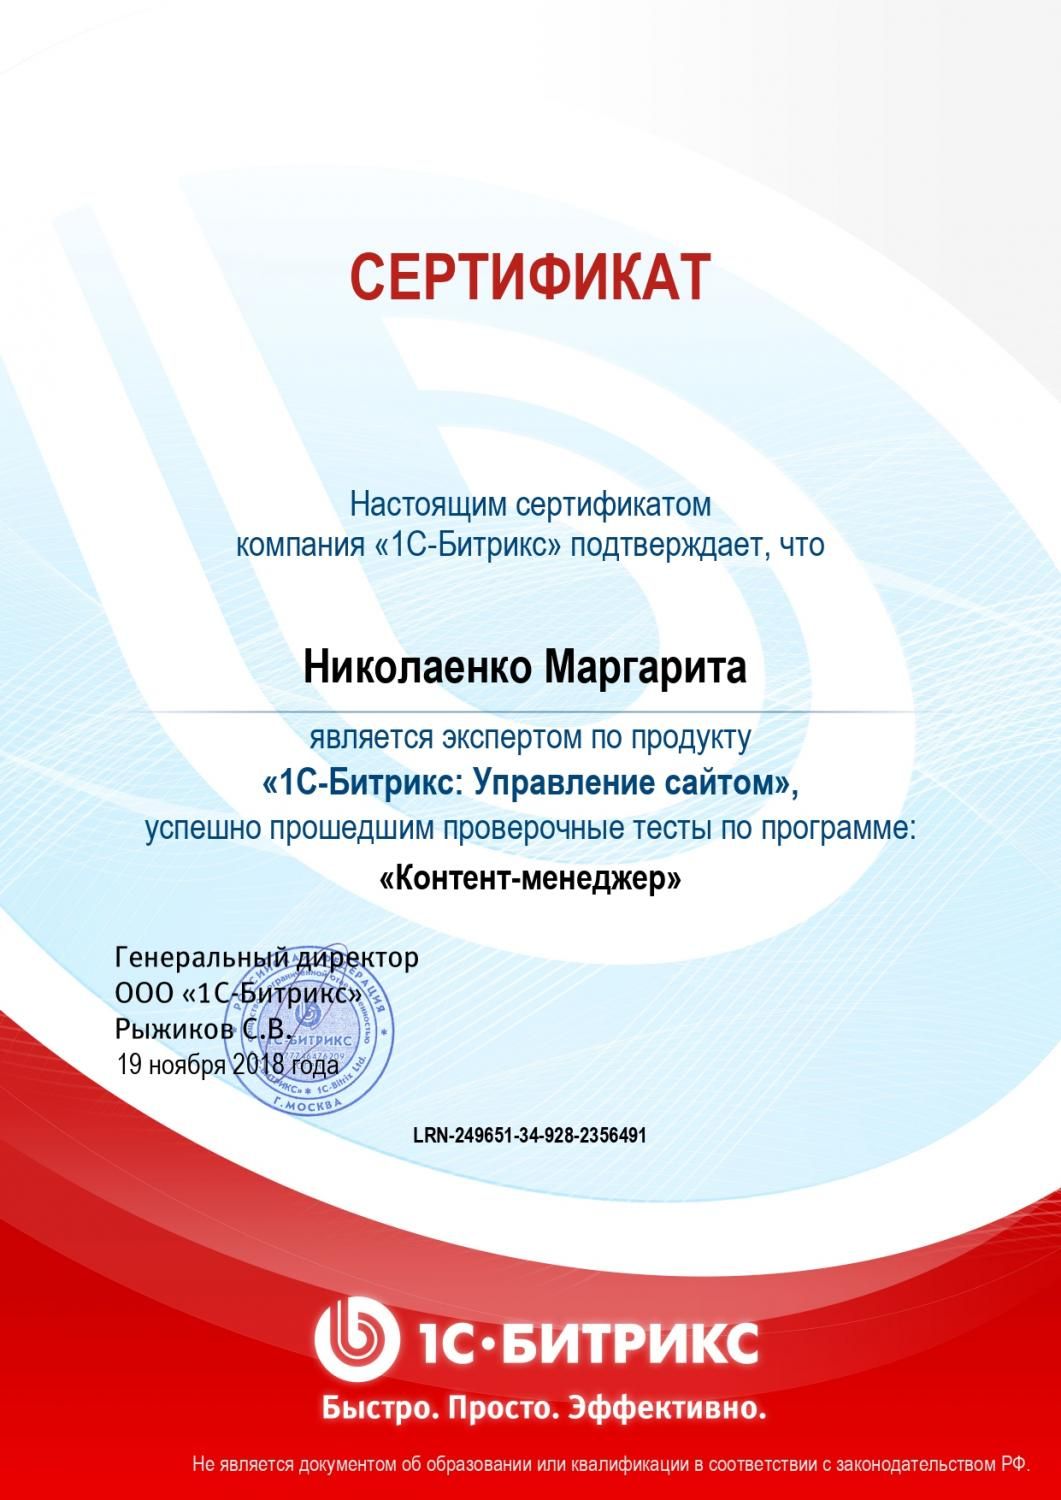 Сертификат эксперта по программе "Контент-менеджер" - Николаенко М. в Саратова